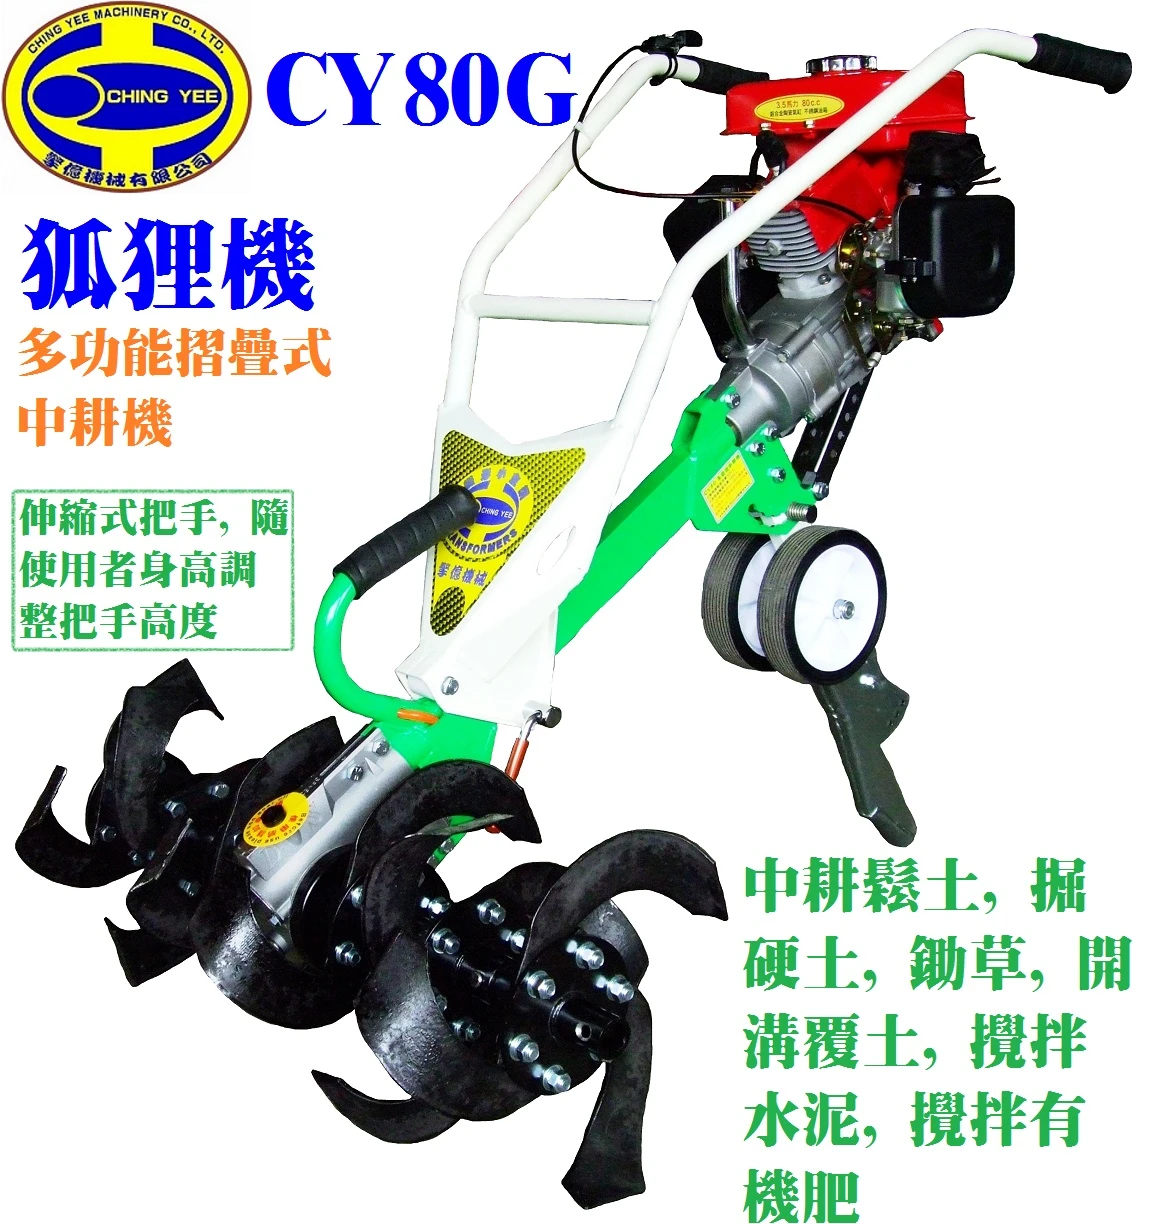 CY80G 狐狸機 6聯3.3馬刀 (縮把手)